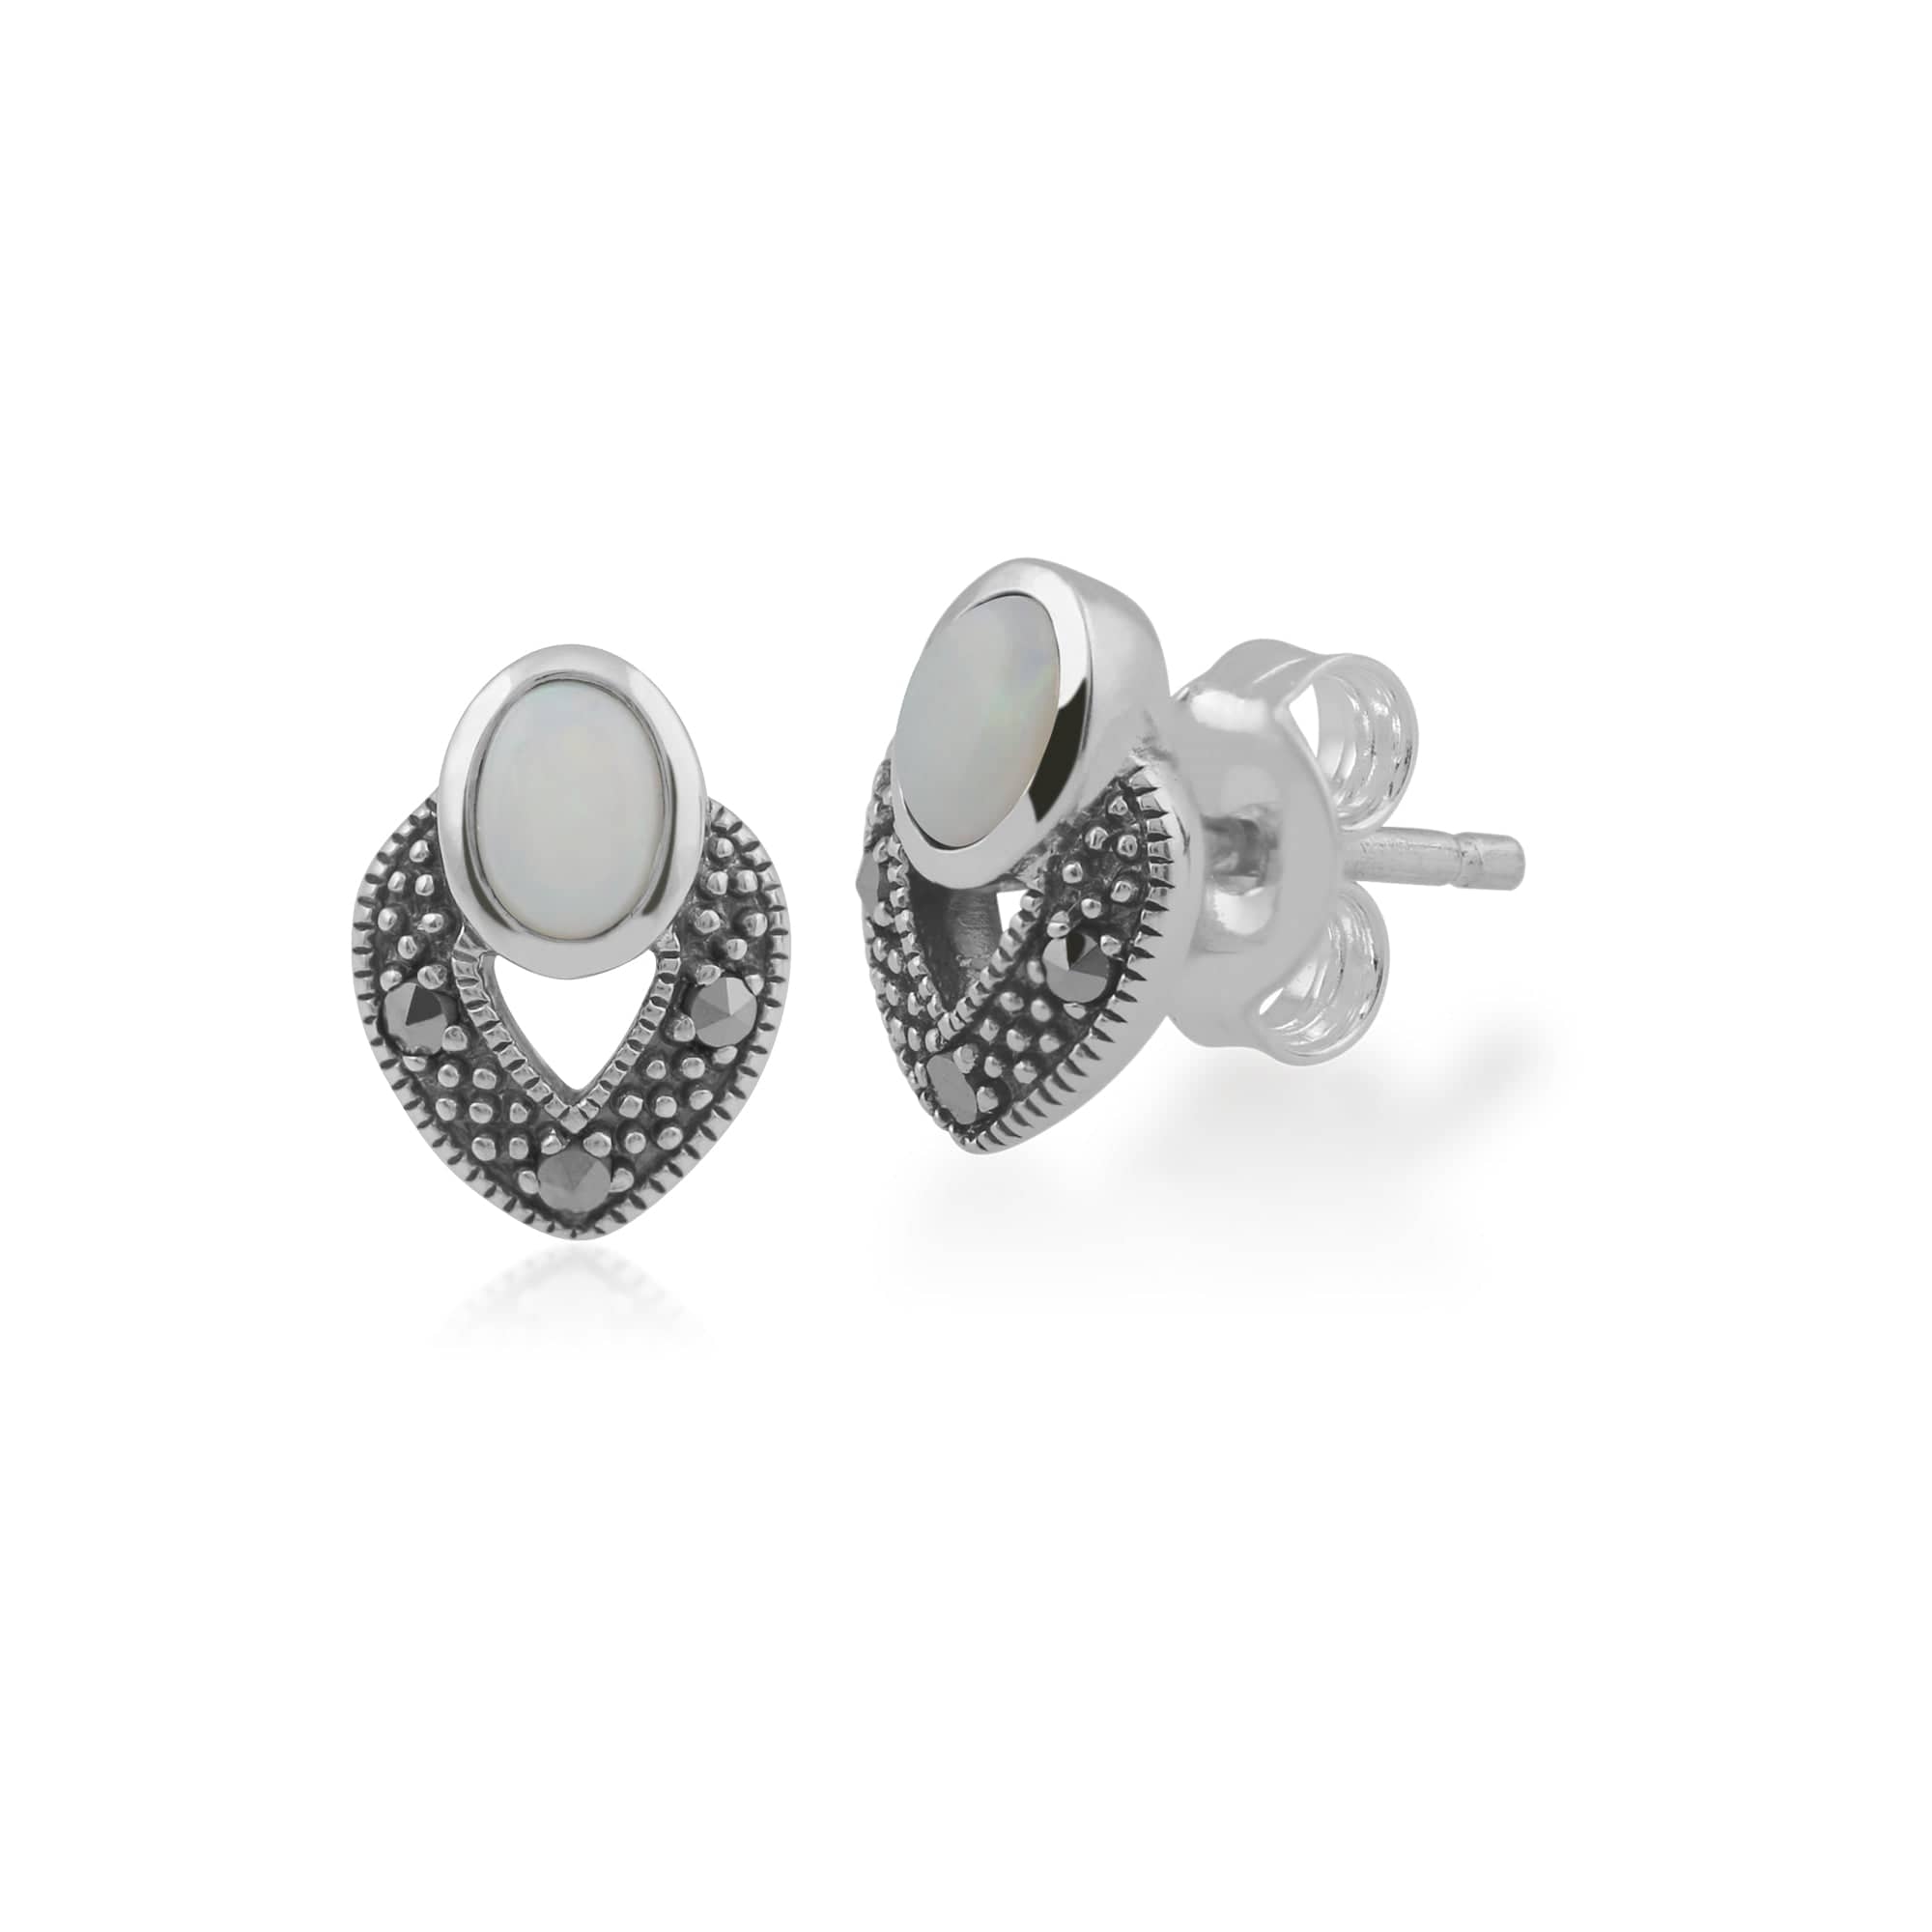 Art Deco Style Oval Opal & Marcasite Stud Earrings & Pendant Set in 925 Sterling Silver - Gemondo